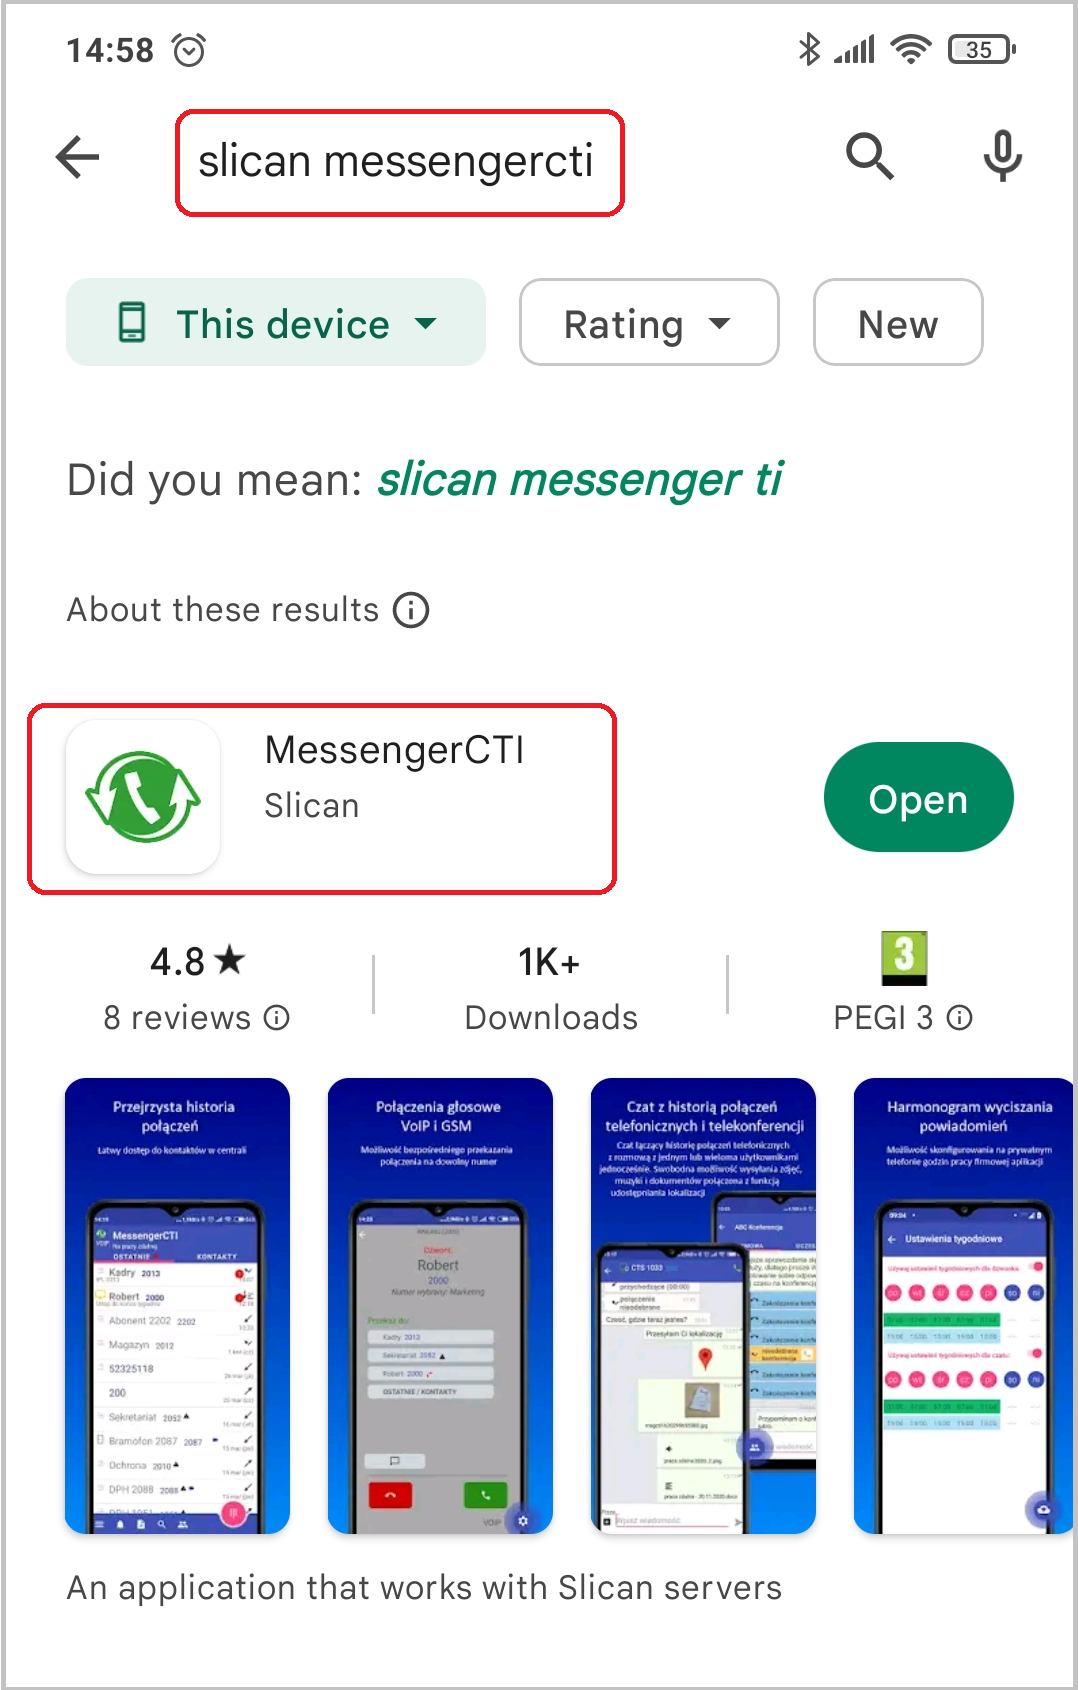 MessengerCTI.mobile 1.08 Beta en.png